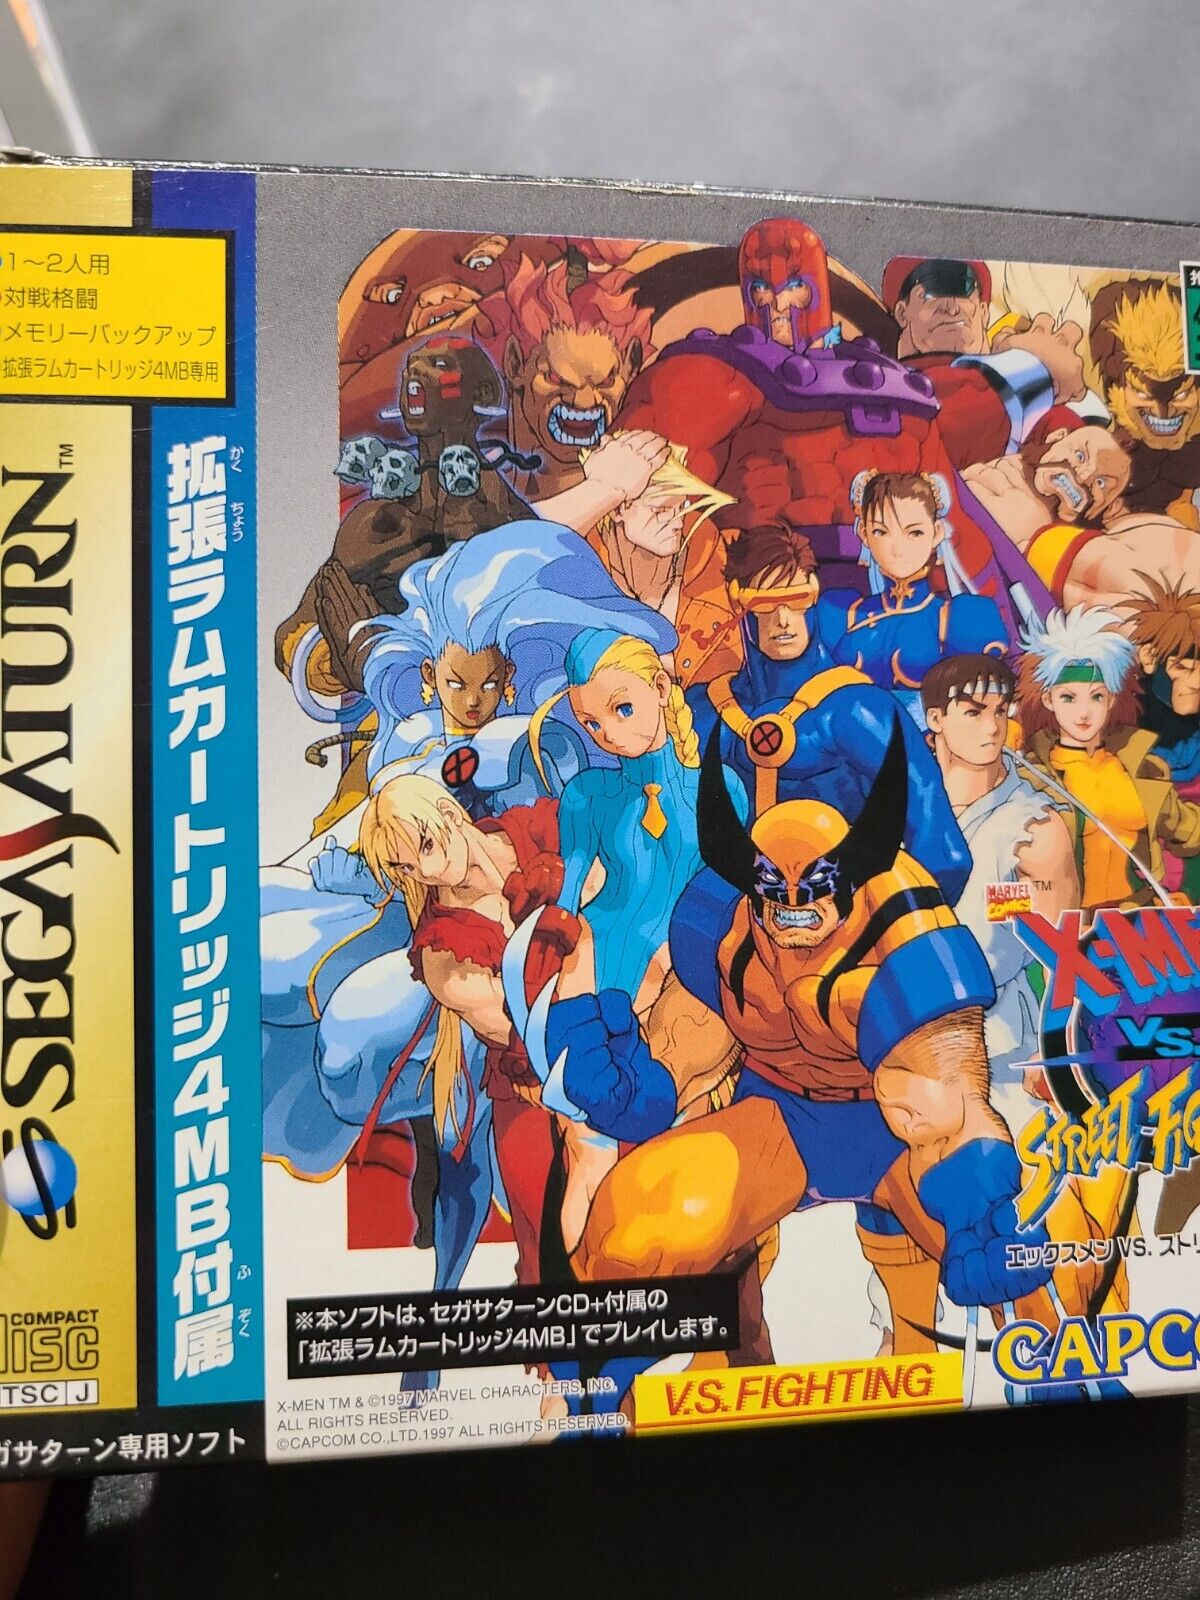 X-Men Vs Street Fighter Sega Saturn US SELLER CIB 4MB RAM